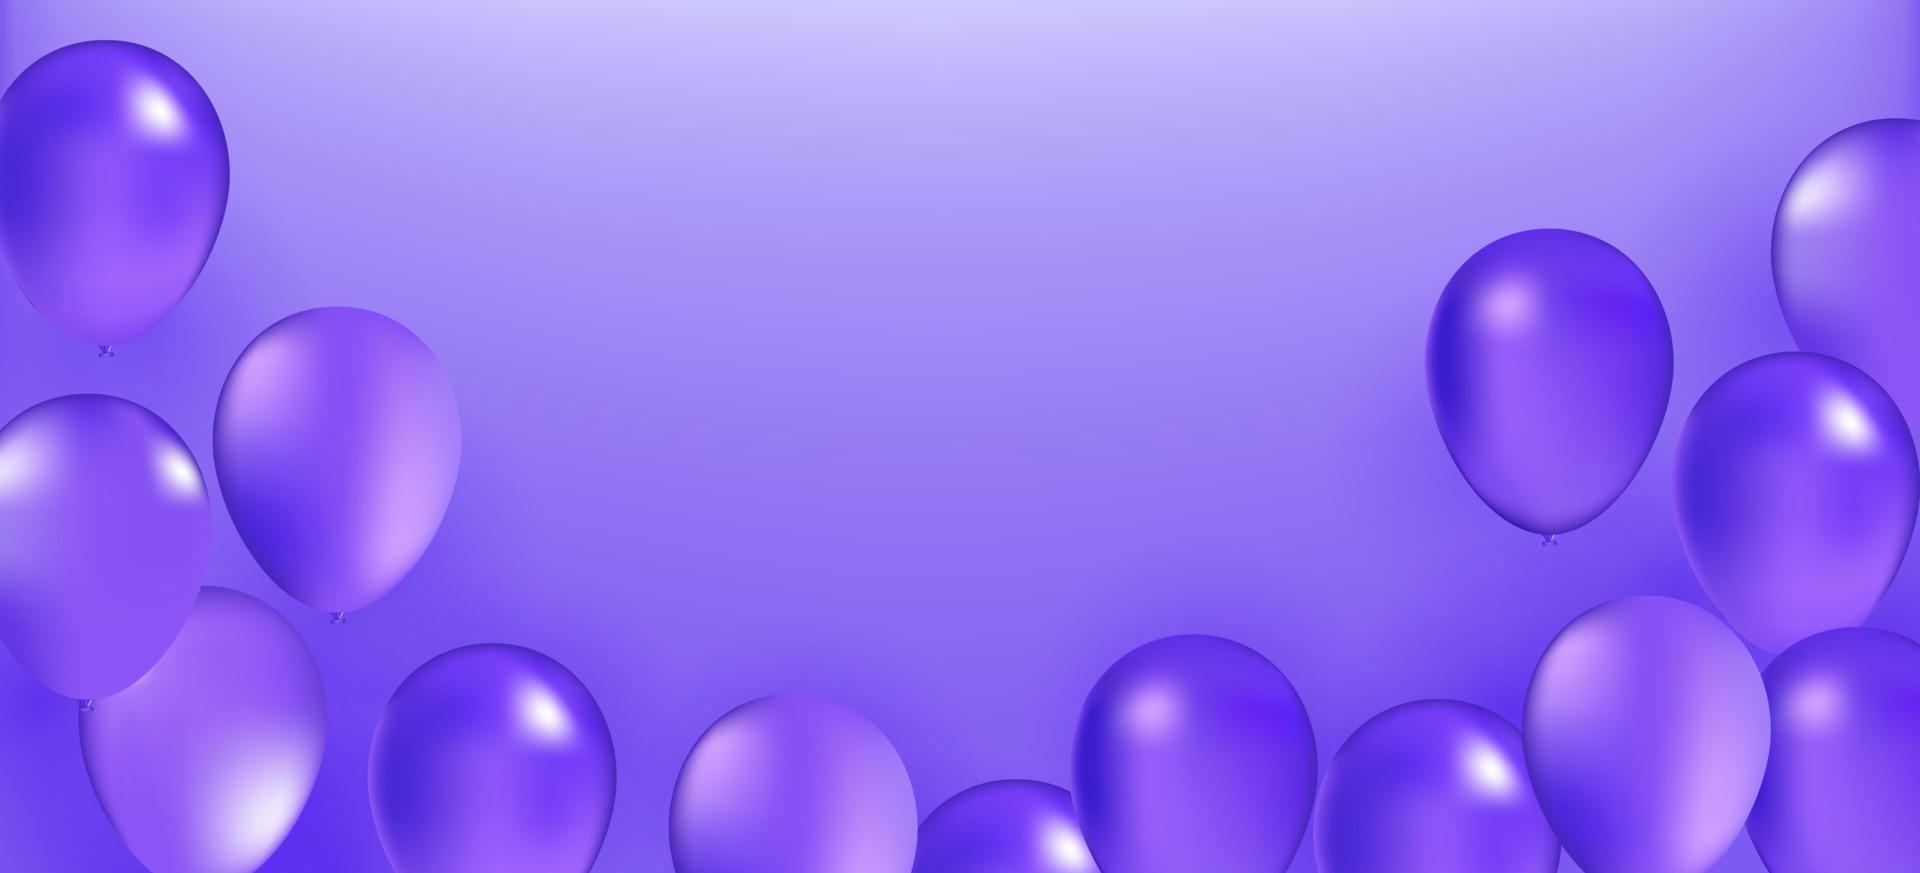 violett Ballon Bündel. Vektor Urlaub Illustration von fliegend violett Luftballons. Geburtstag oder andere Urlaub Veranstaltung Dekoration Element